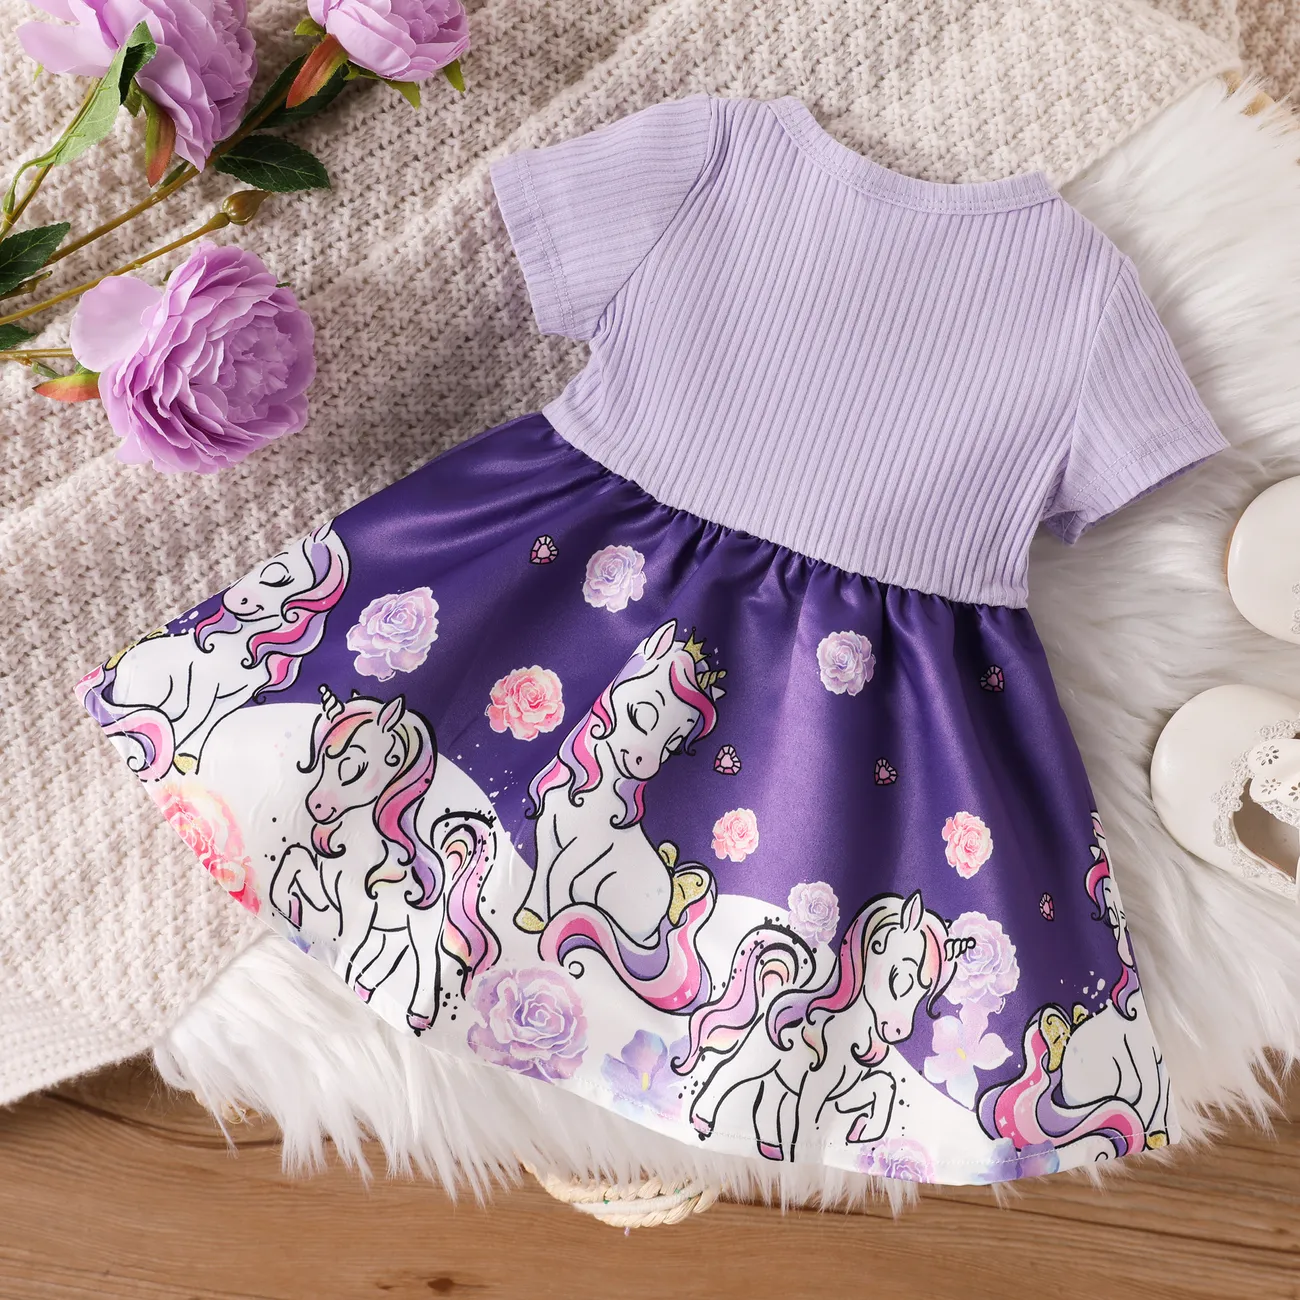 Bébé Couture de tissus Licorne Enfantin Manches courtes Robe Violet big image 1